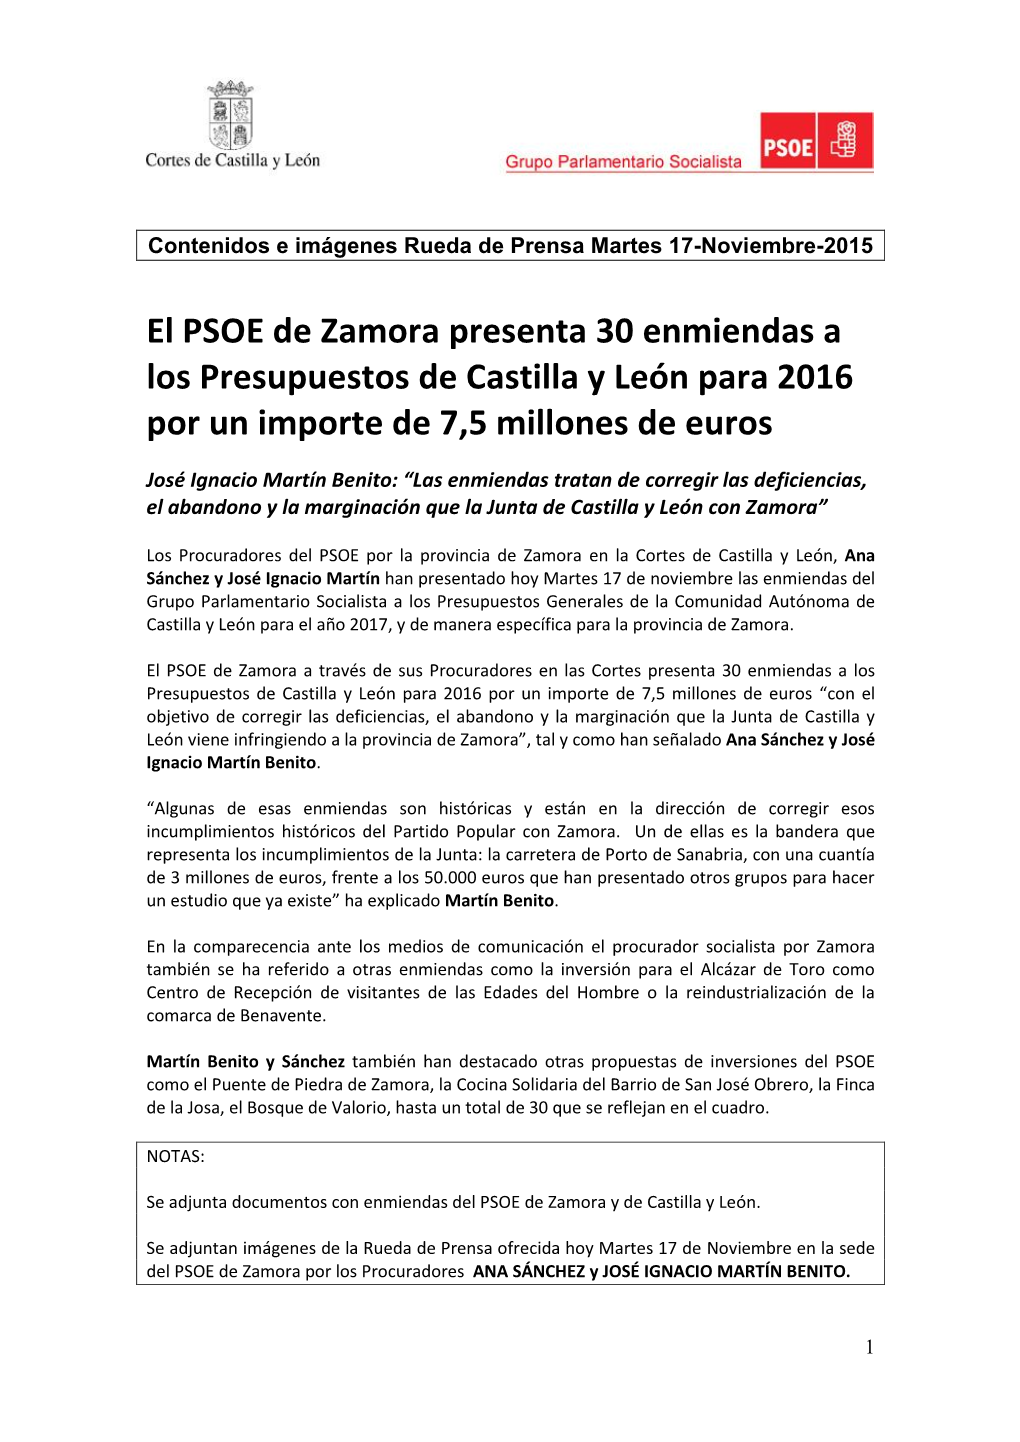 El PSOE De Zamora Presenta 30 Enmiendas a Los Presupuestos De Castilla Y León Para 2016 Por Un Importe De 7,5 Millones De Euros